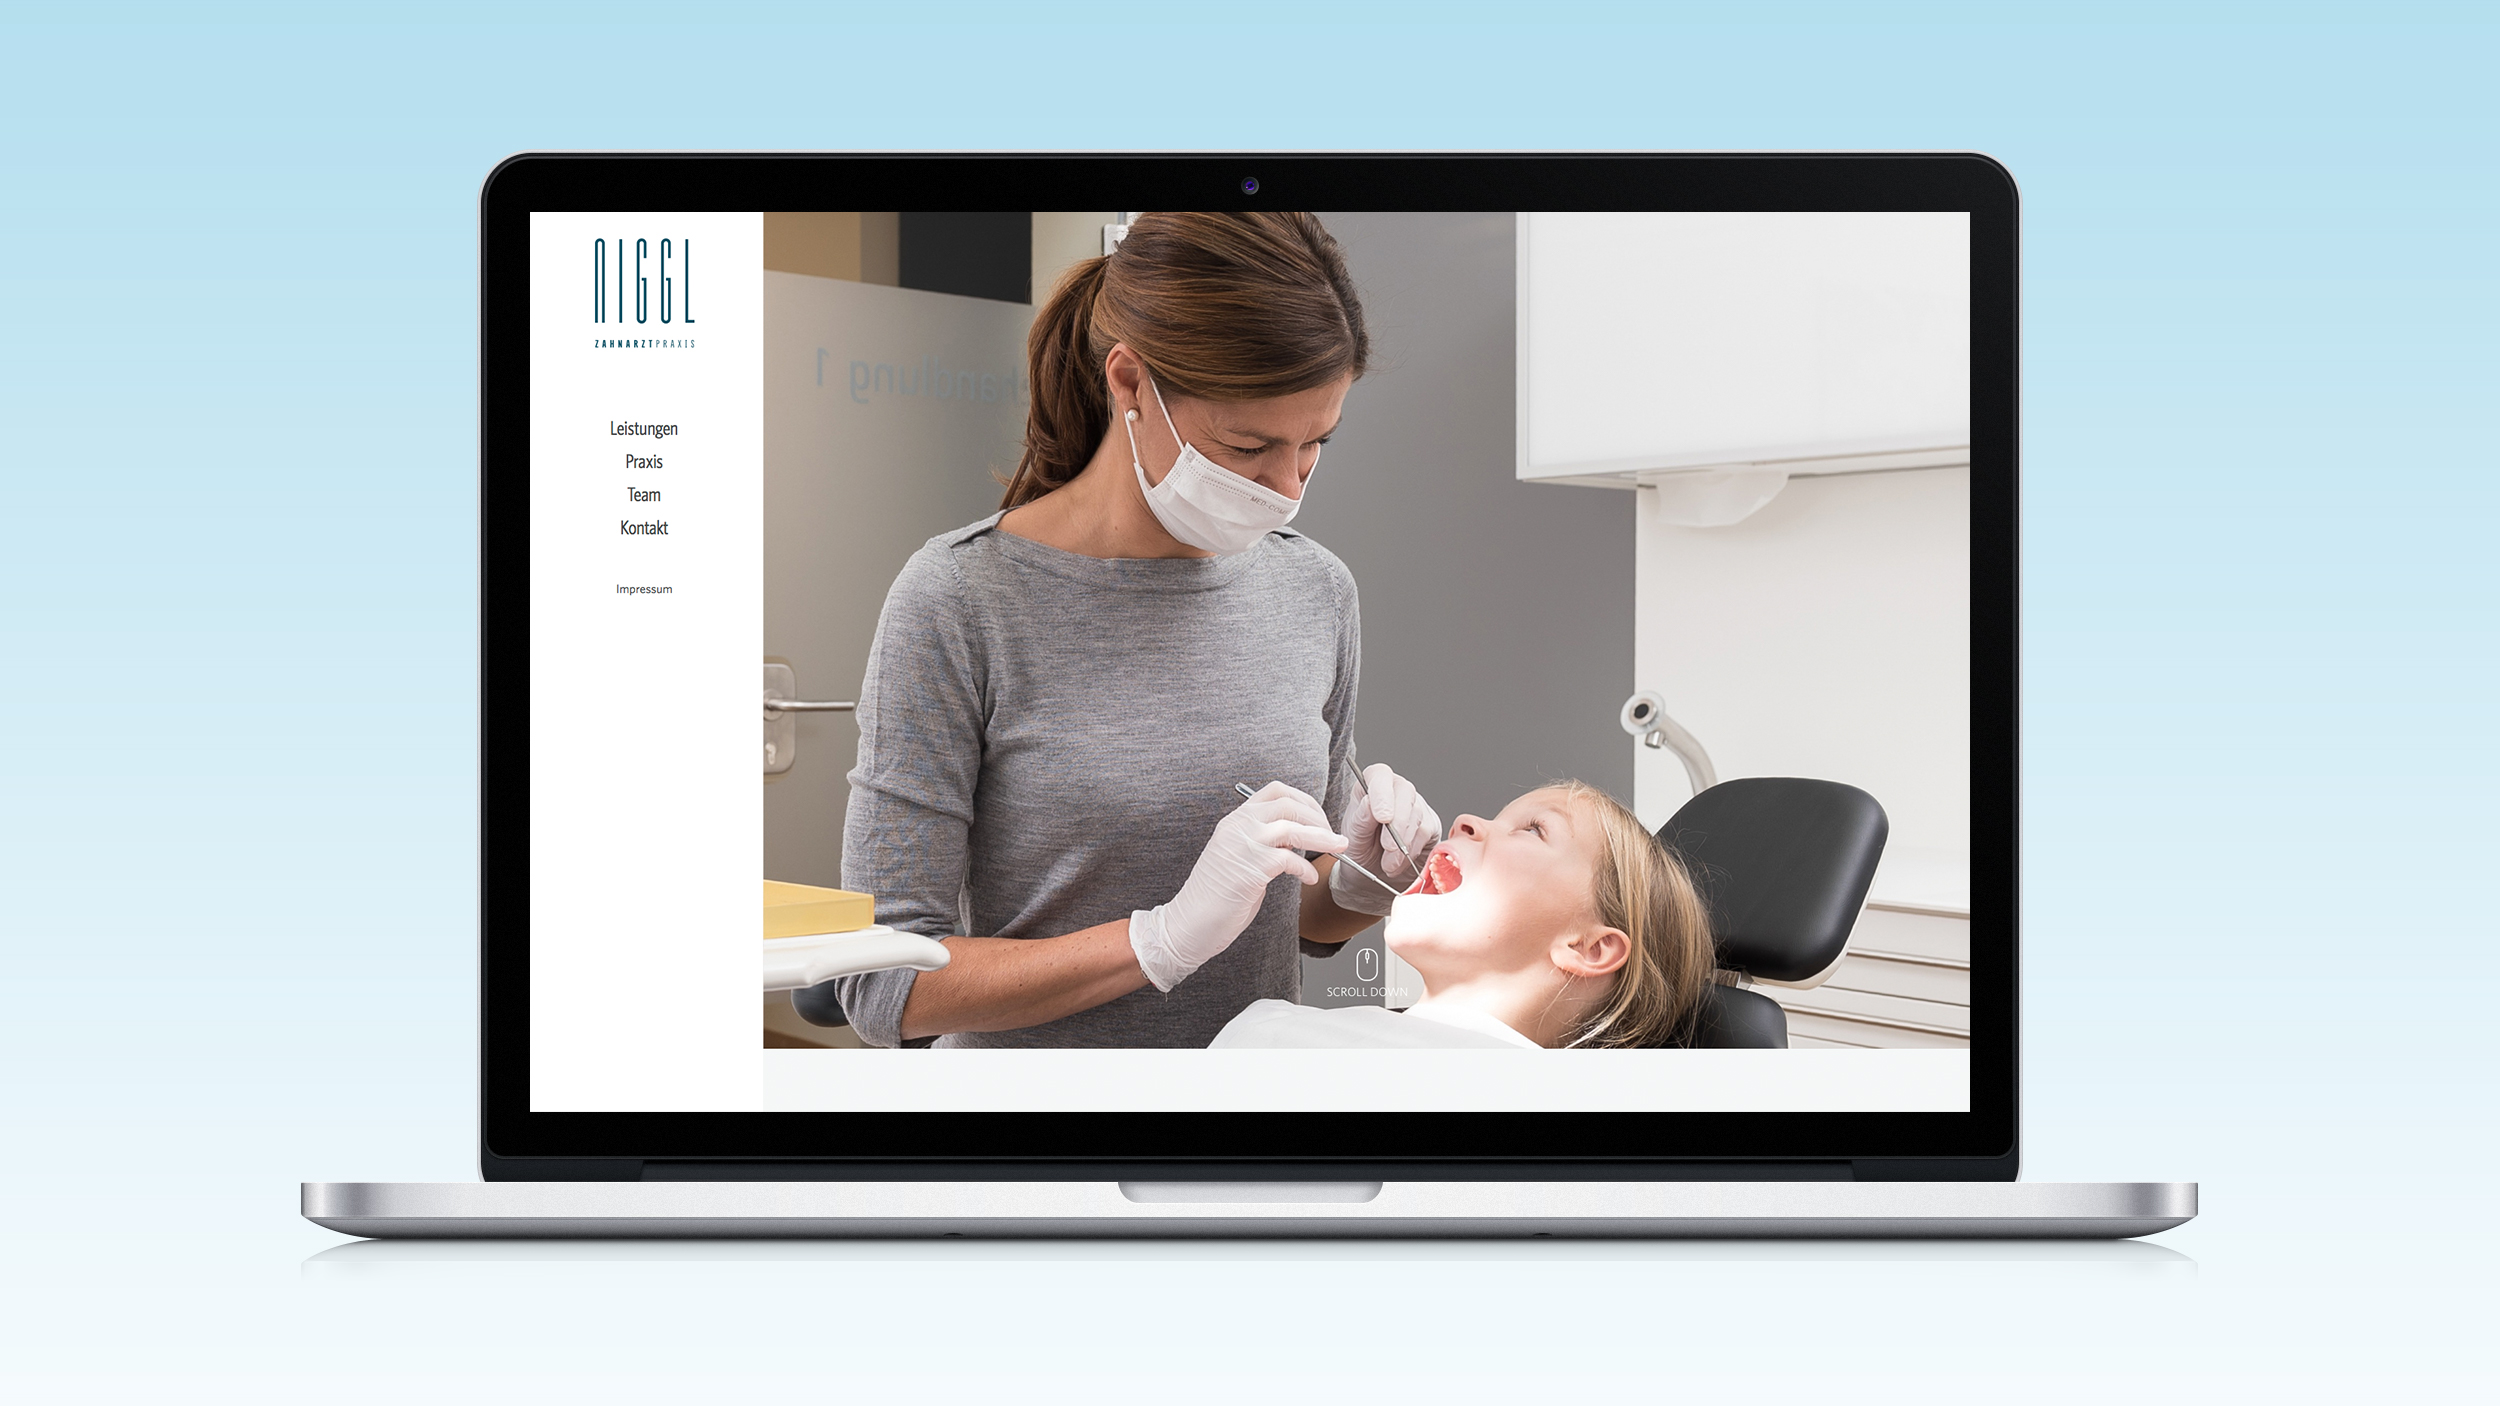 Moderner Interntauftritt mit neuem Corporate Design für Zahnarztpraxis aus Memmingen von der Designagentur das formt aus München